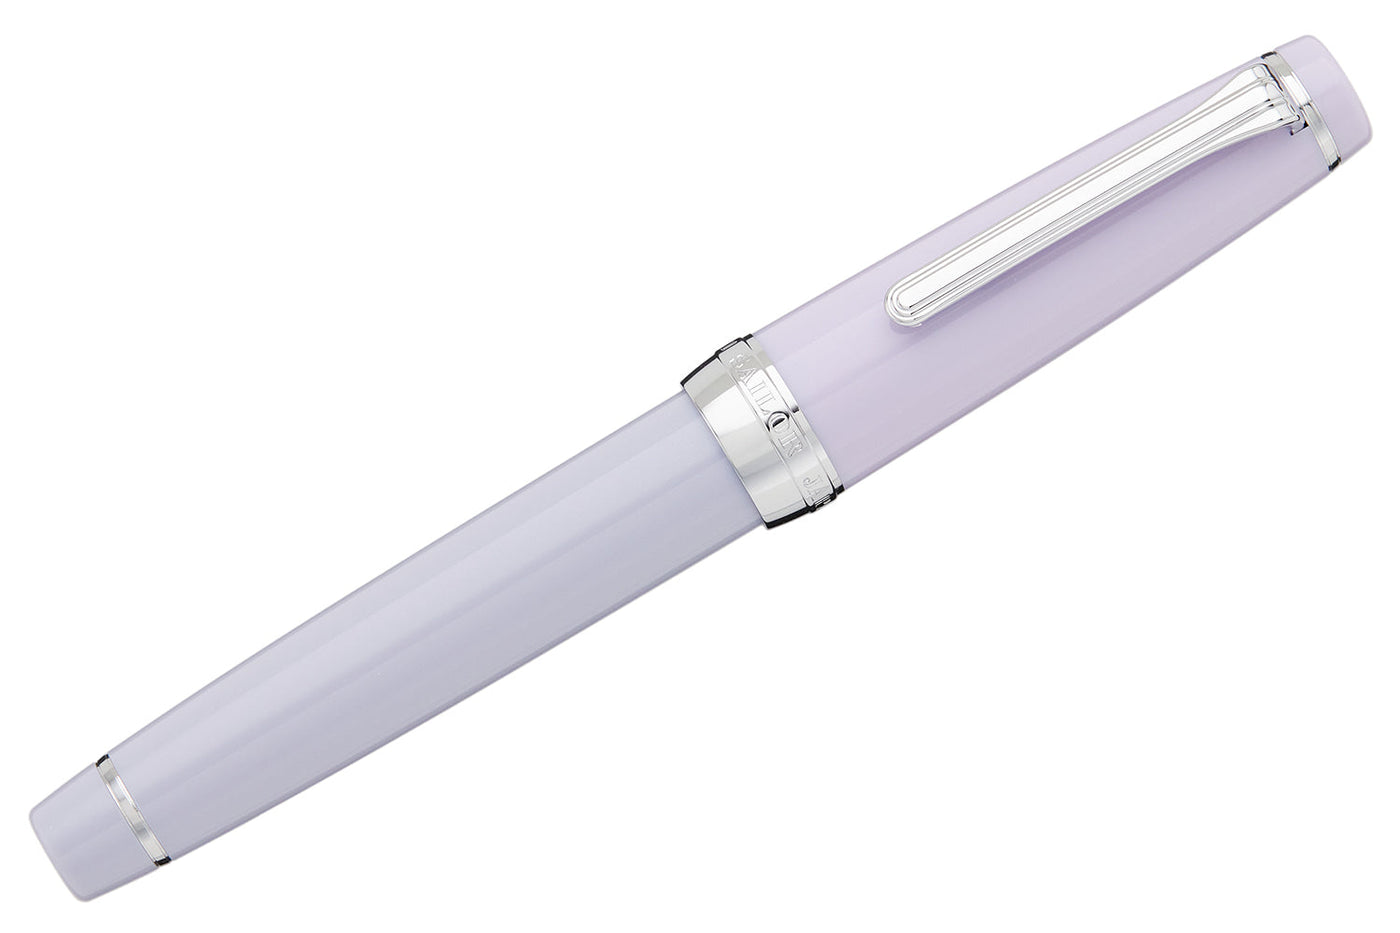 Sailor Pro Gear Slim Fountain Pens